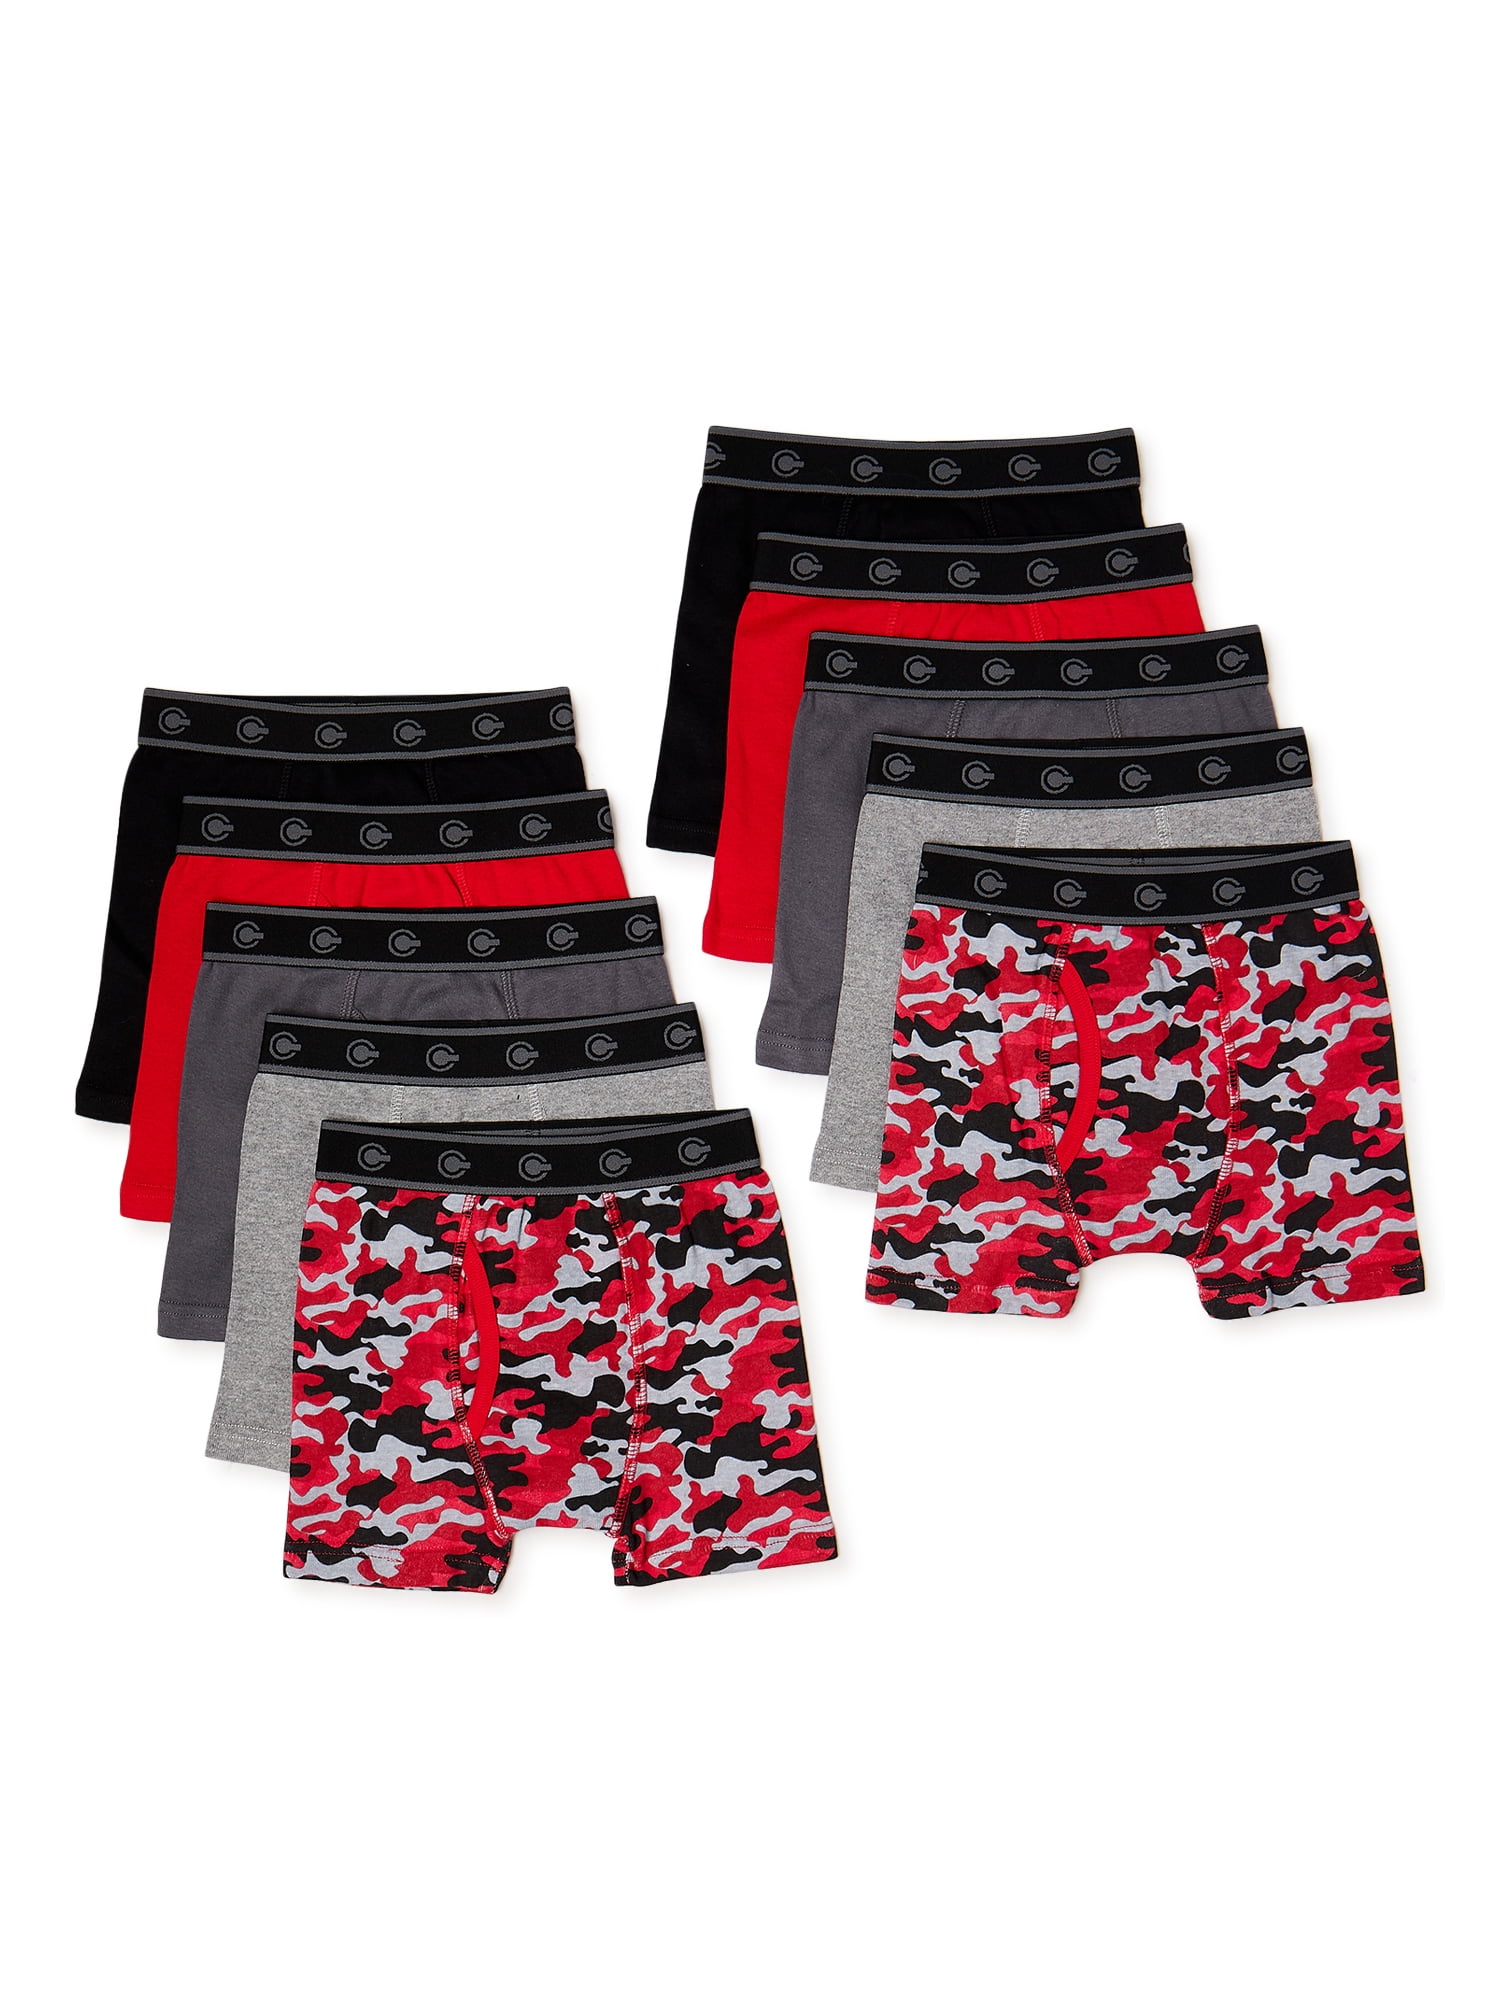 Hanes Boys Underwear, 10 Pack Tagless ComfortFlex Waistband Boxer Brief  Sizes S-XXL 